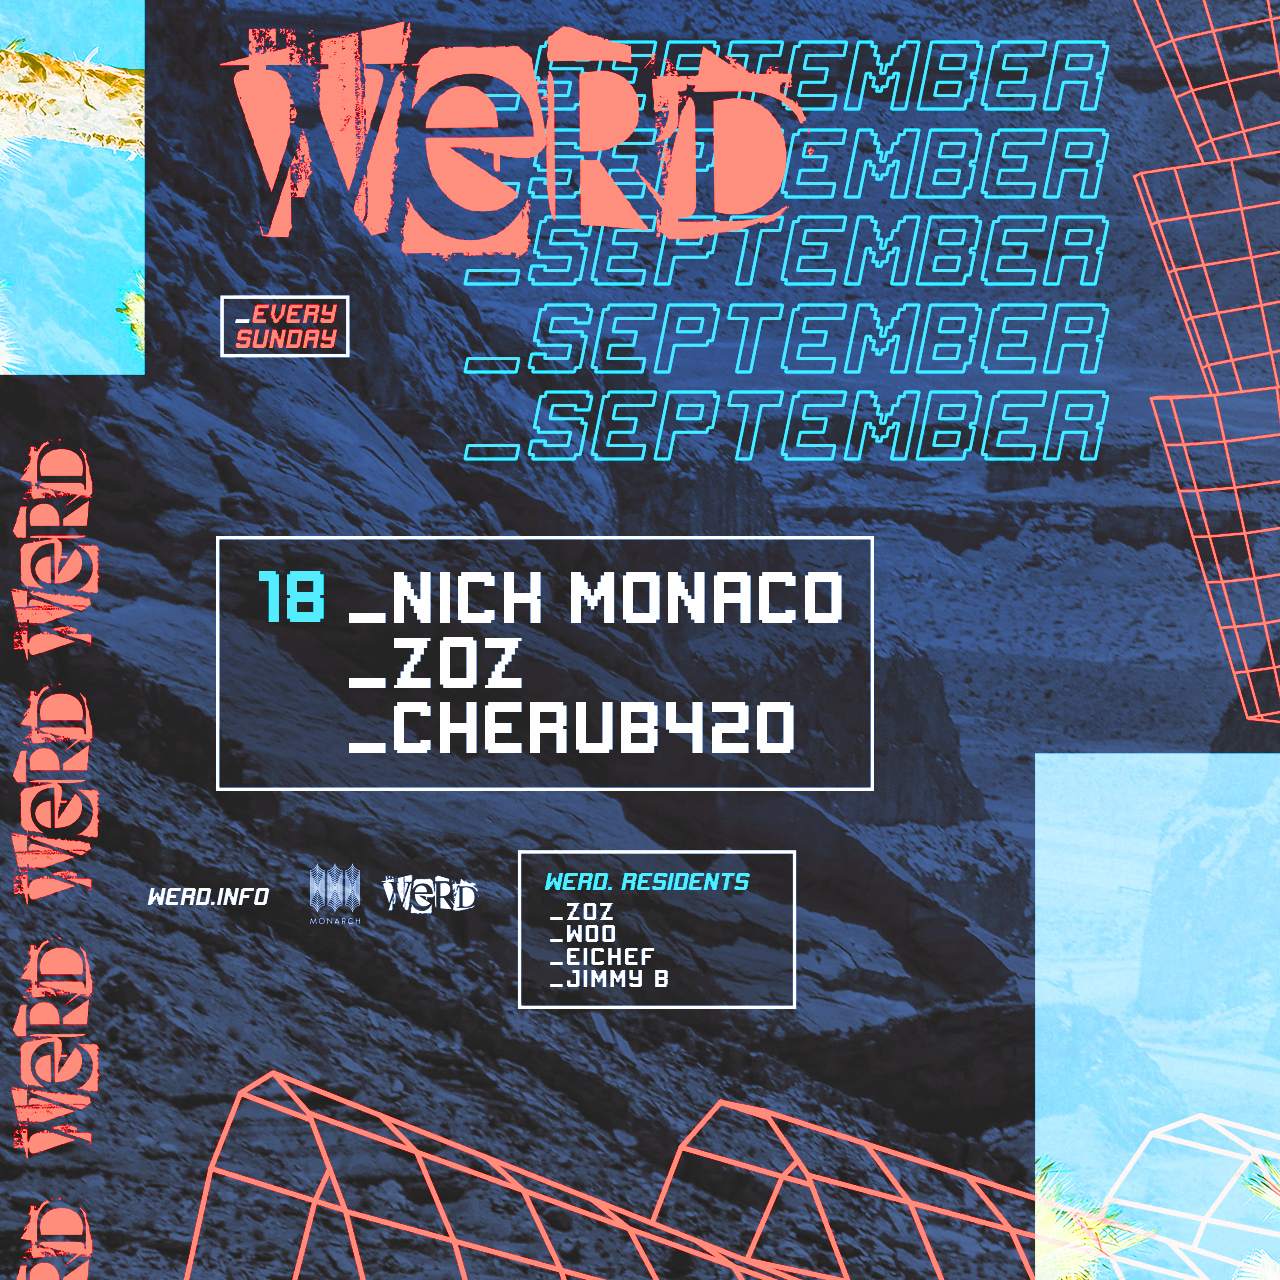 WERD. with Nick Monaco, Zoz, Cherub420 - フライヤー裏